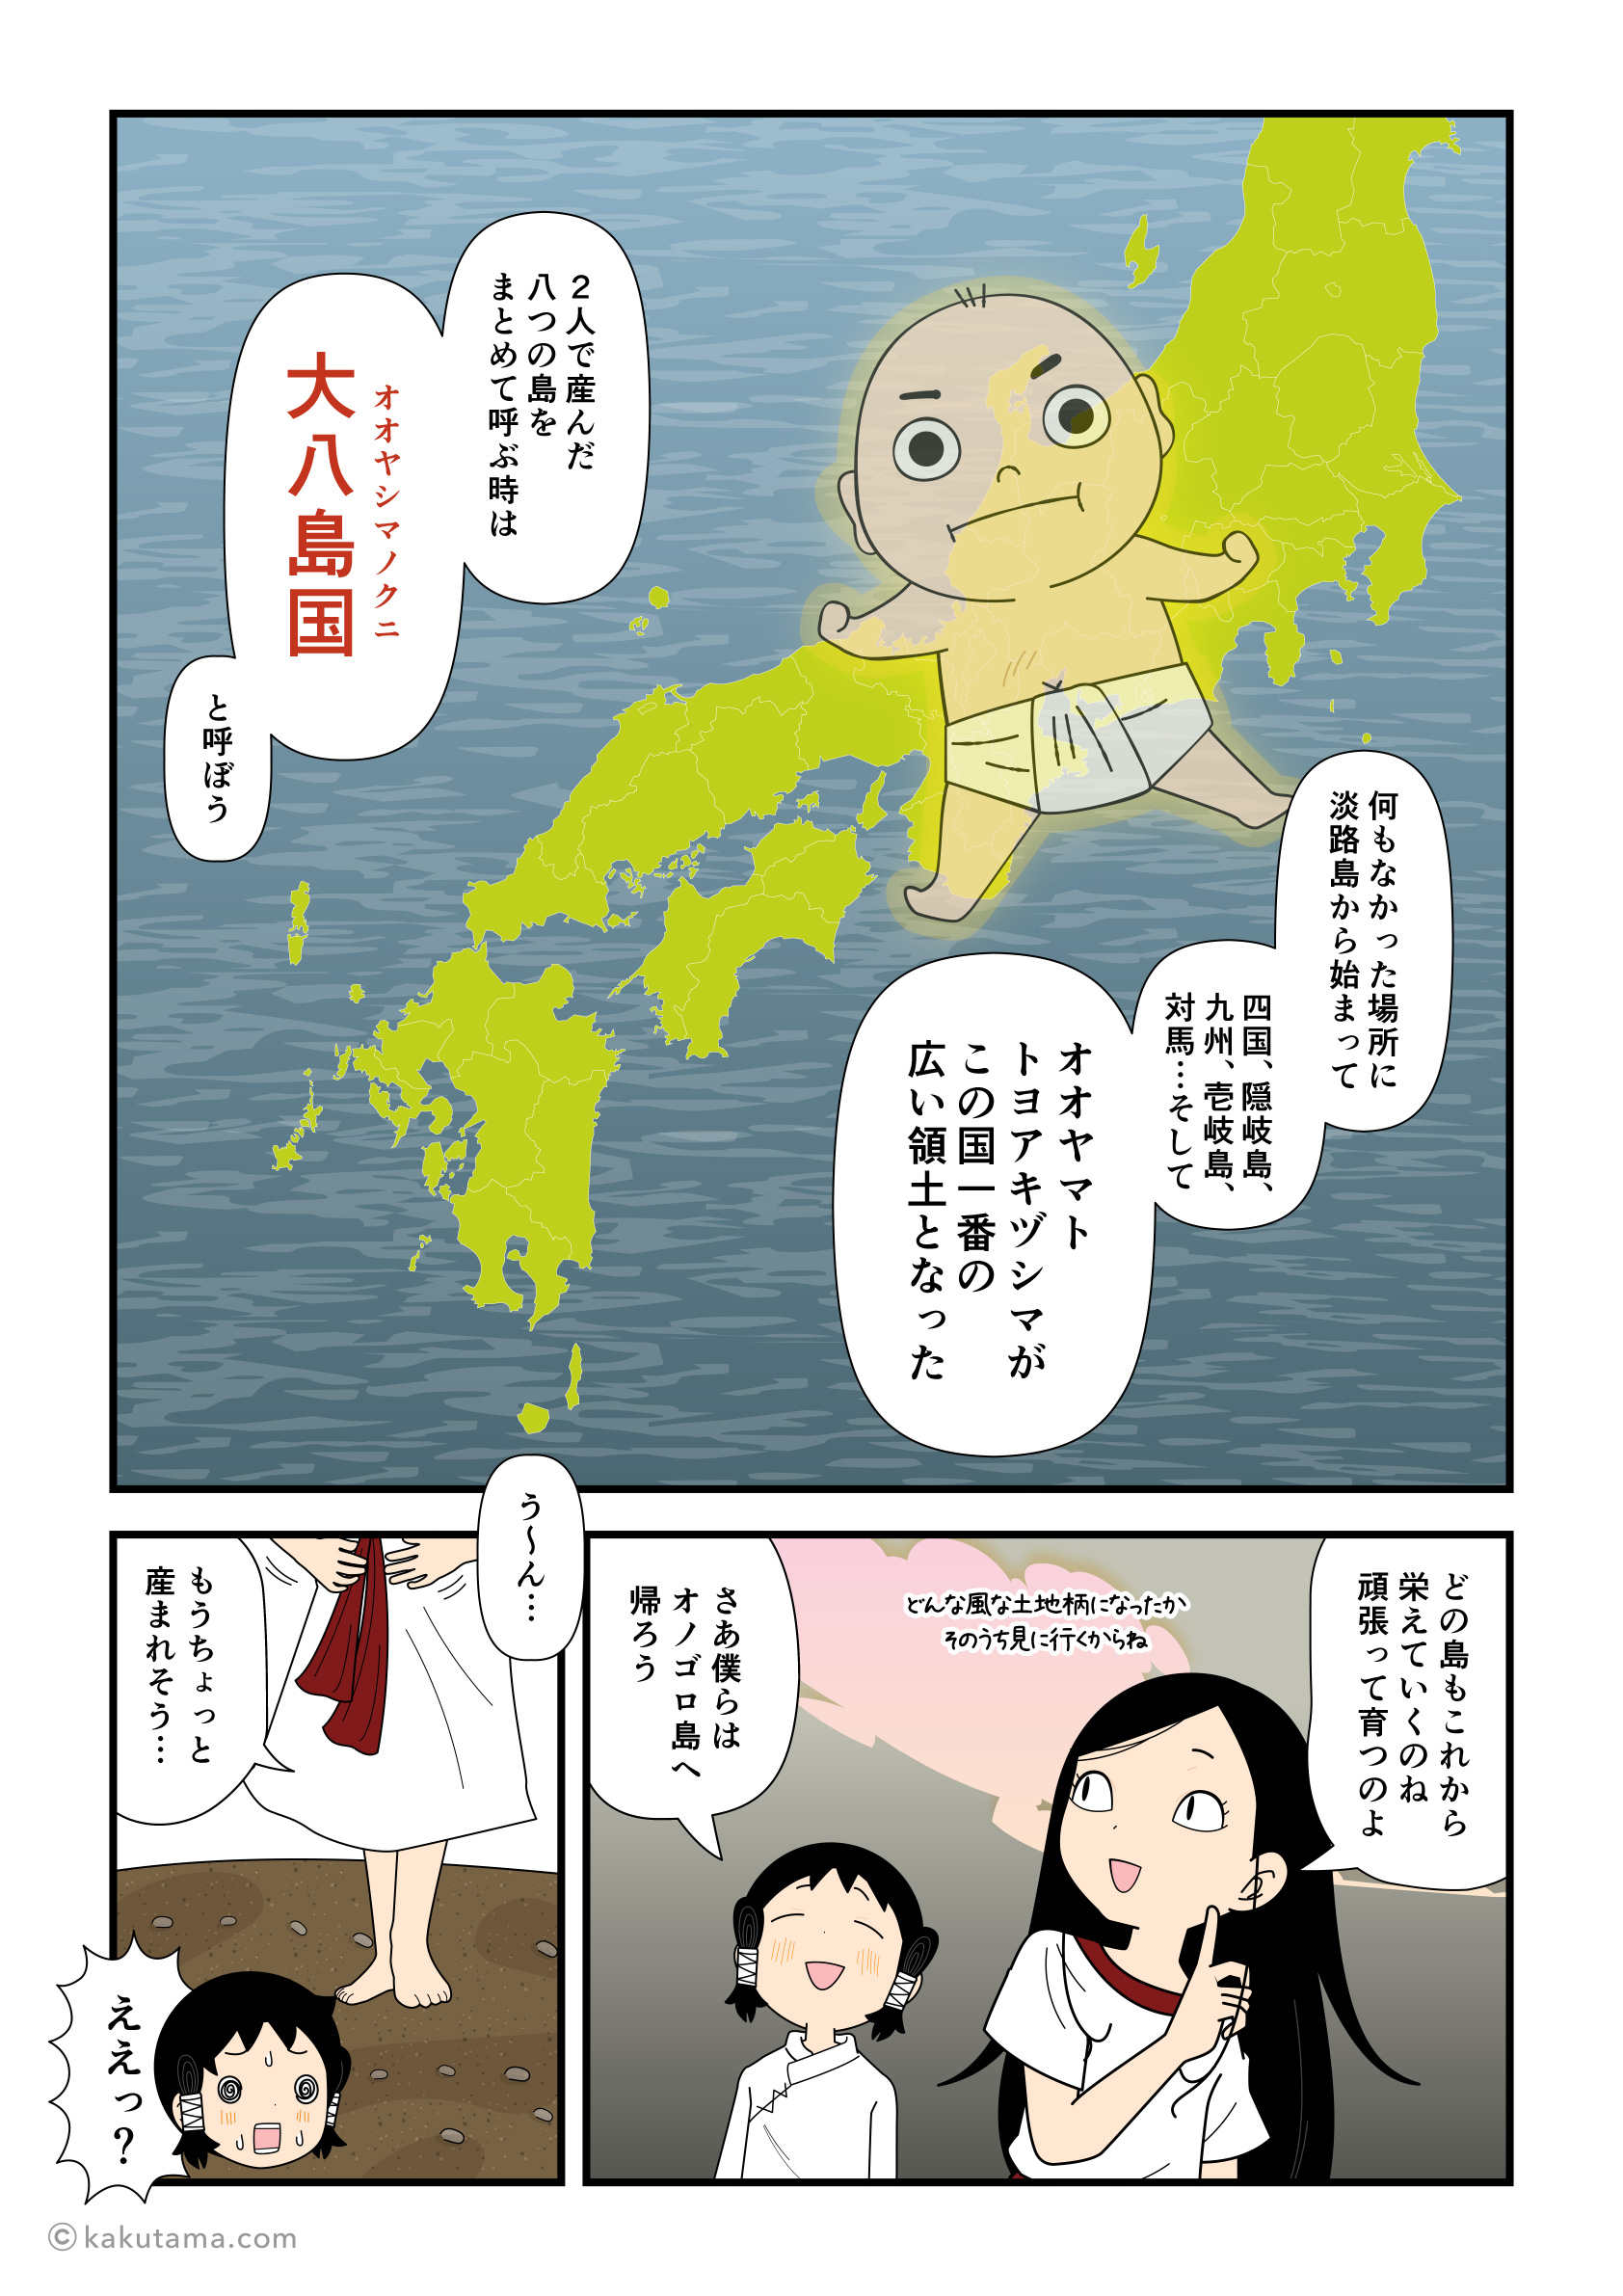 イザナギとイザナミによって大八島国（オオヤシマノクニ）が完成した漫画